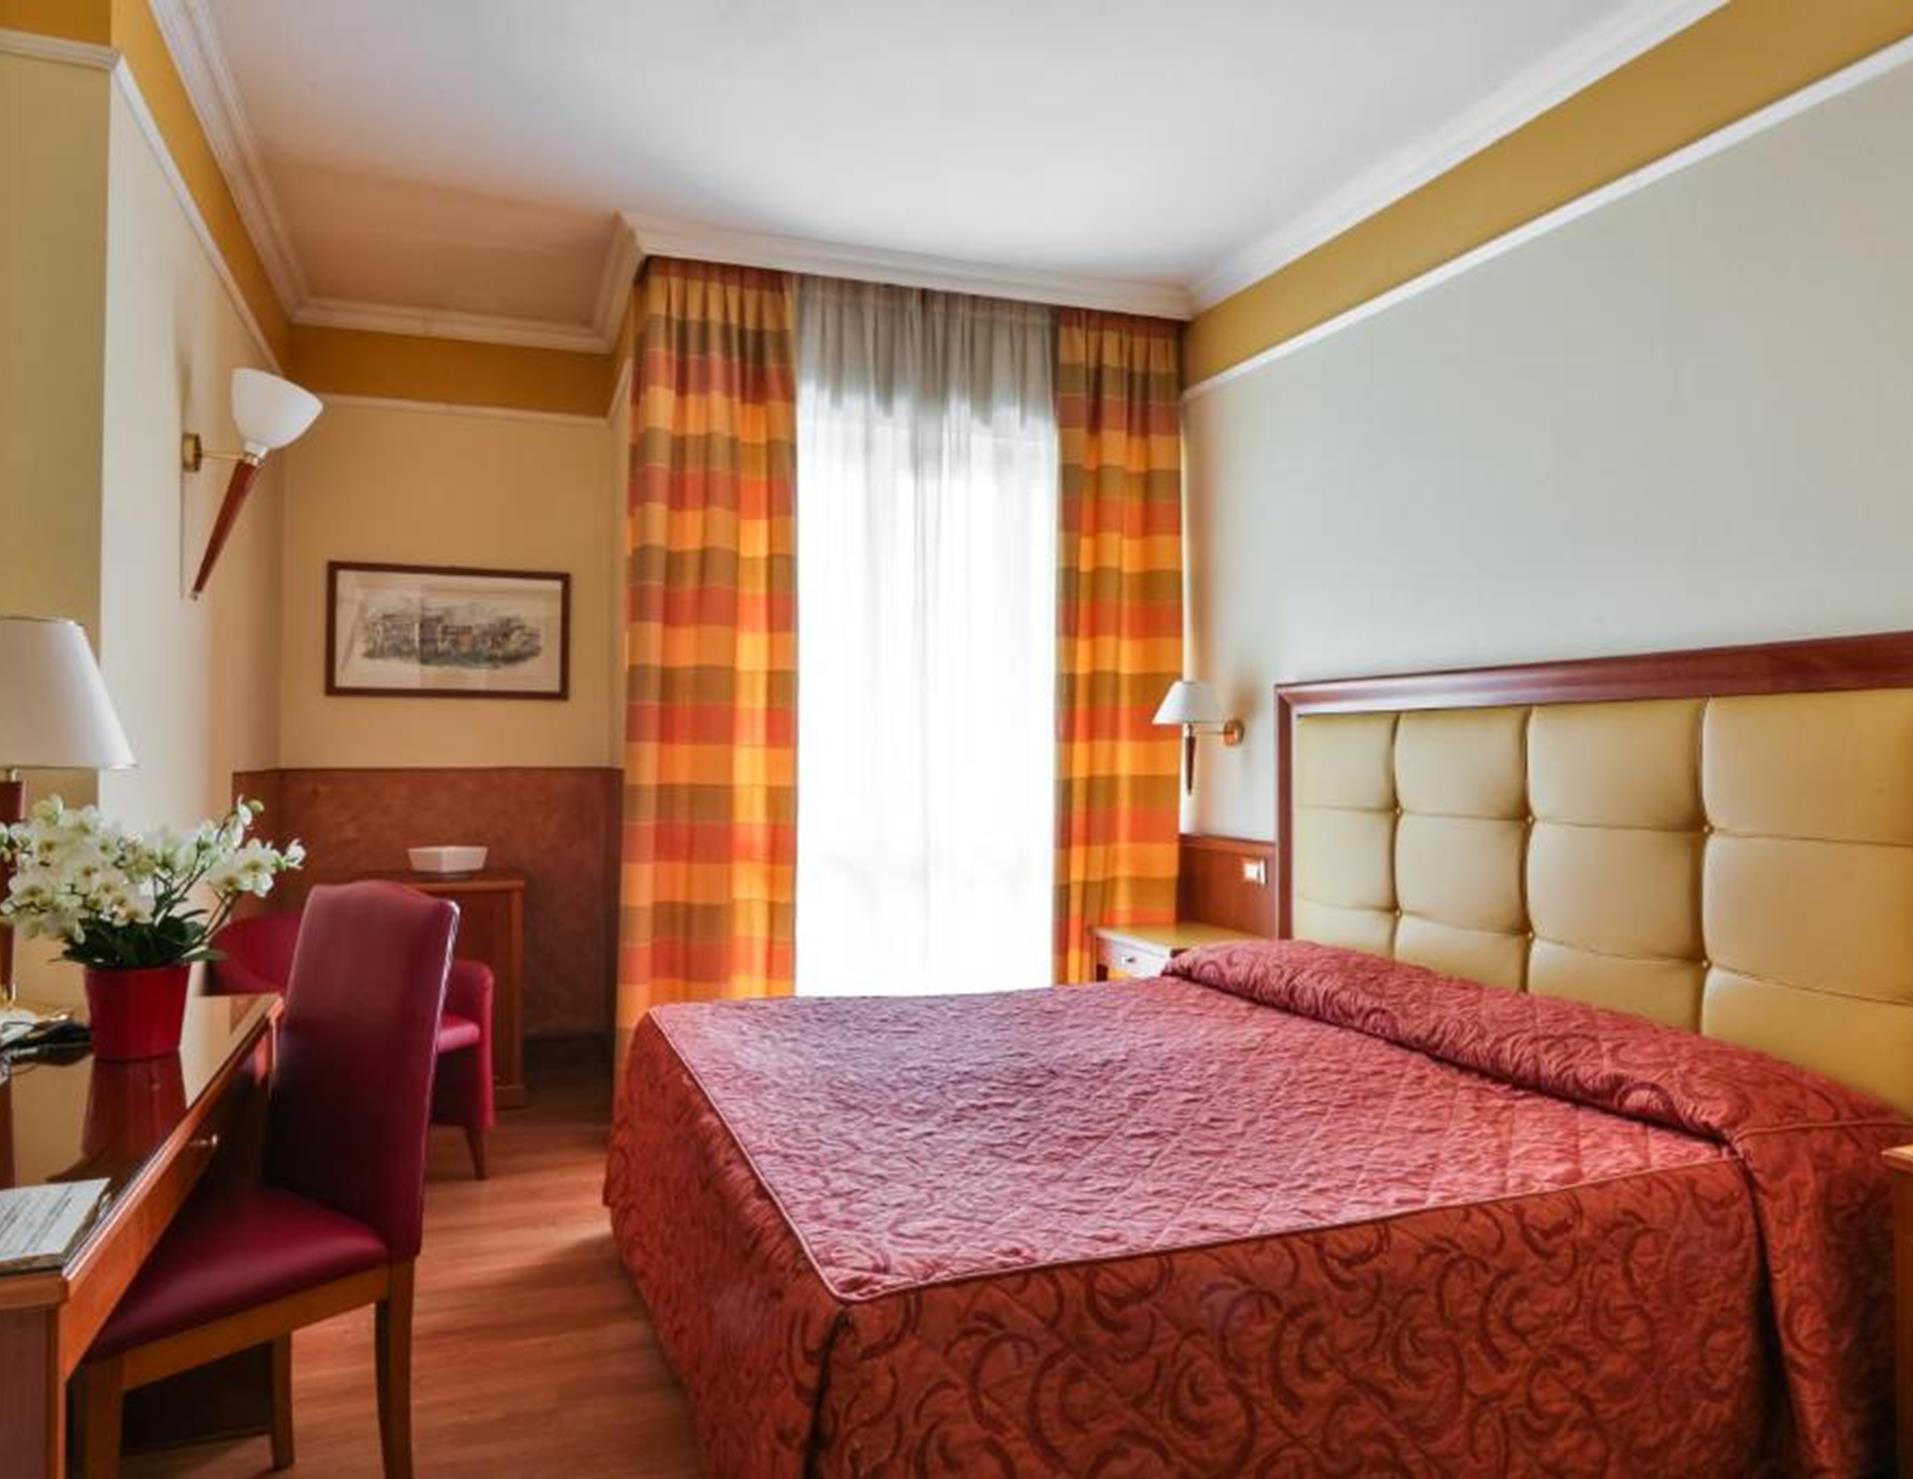 Hotel Il Chiostro - Room 4